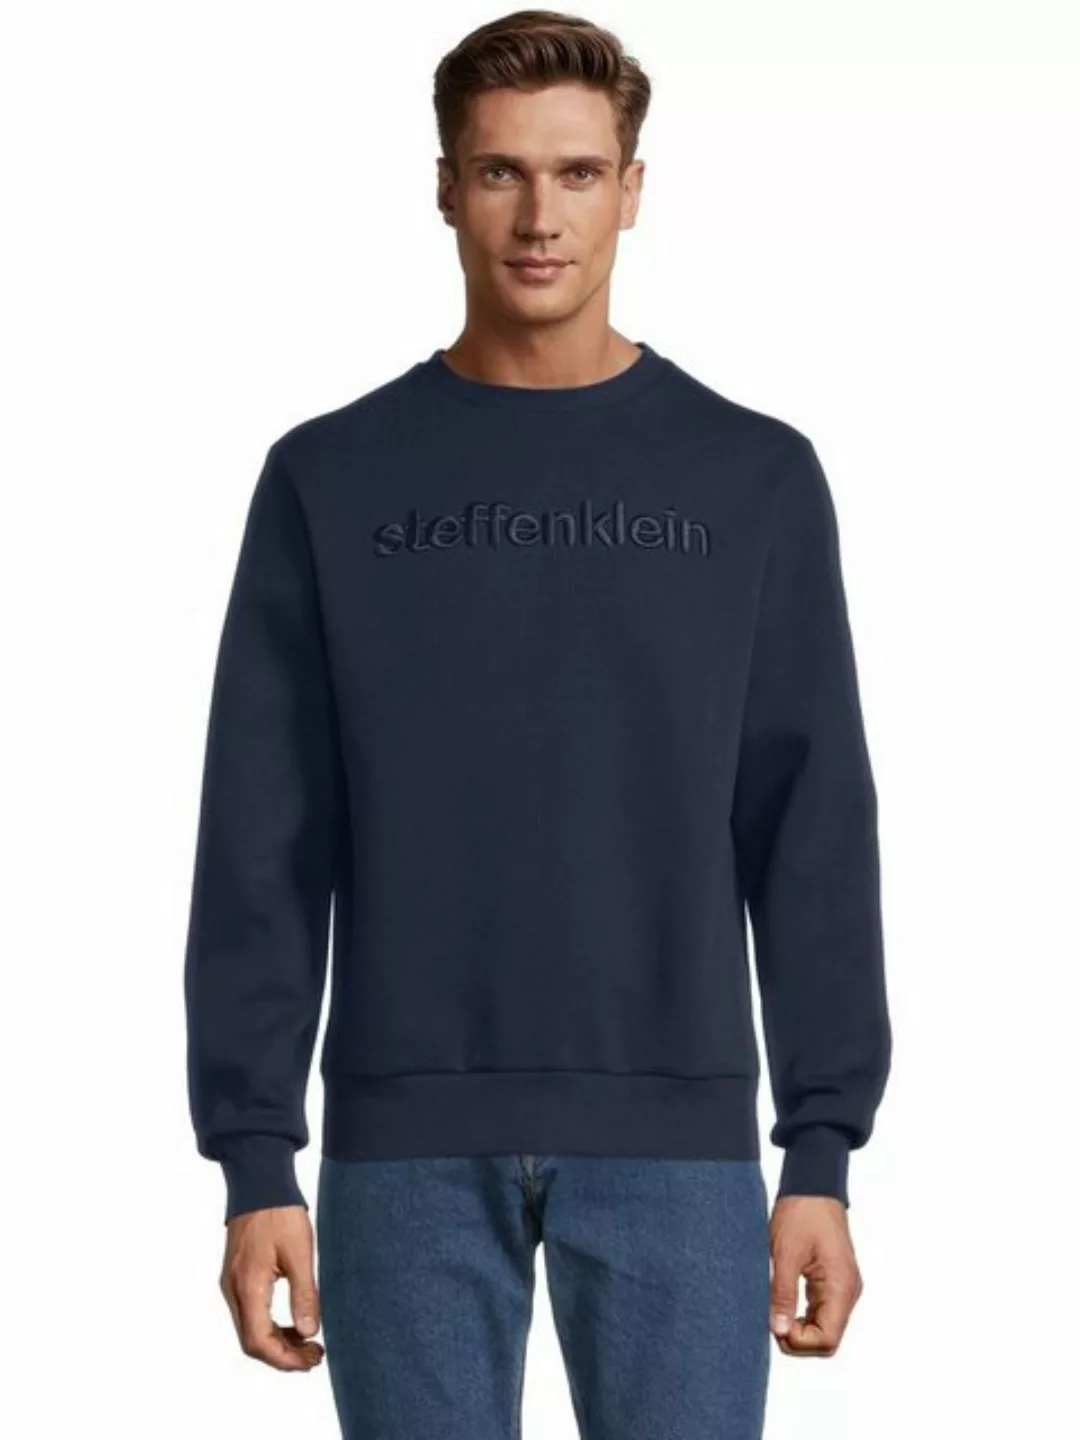 SteffenKlein Sweatshirt günstig online kaufen